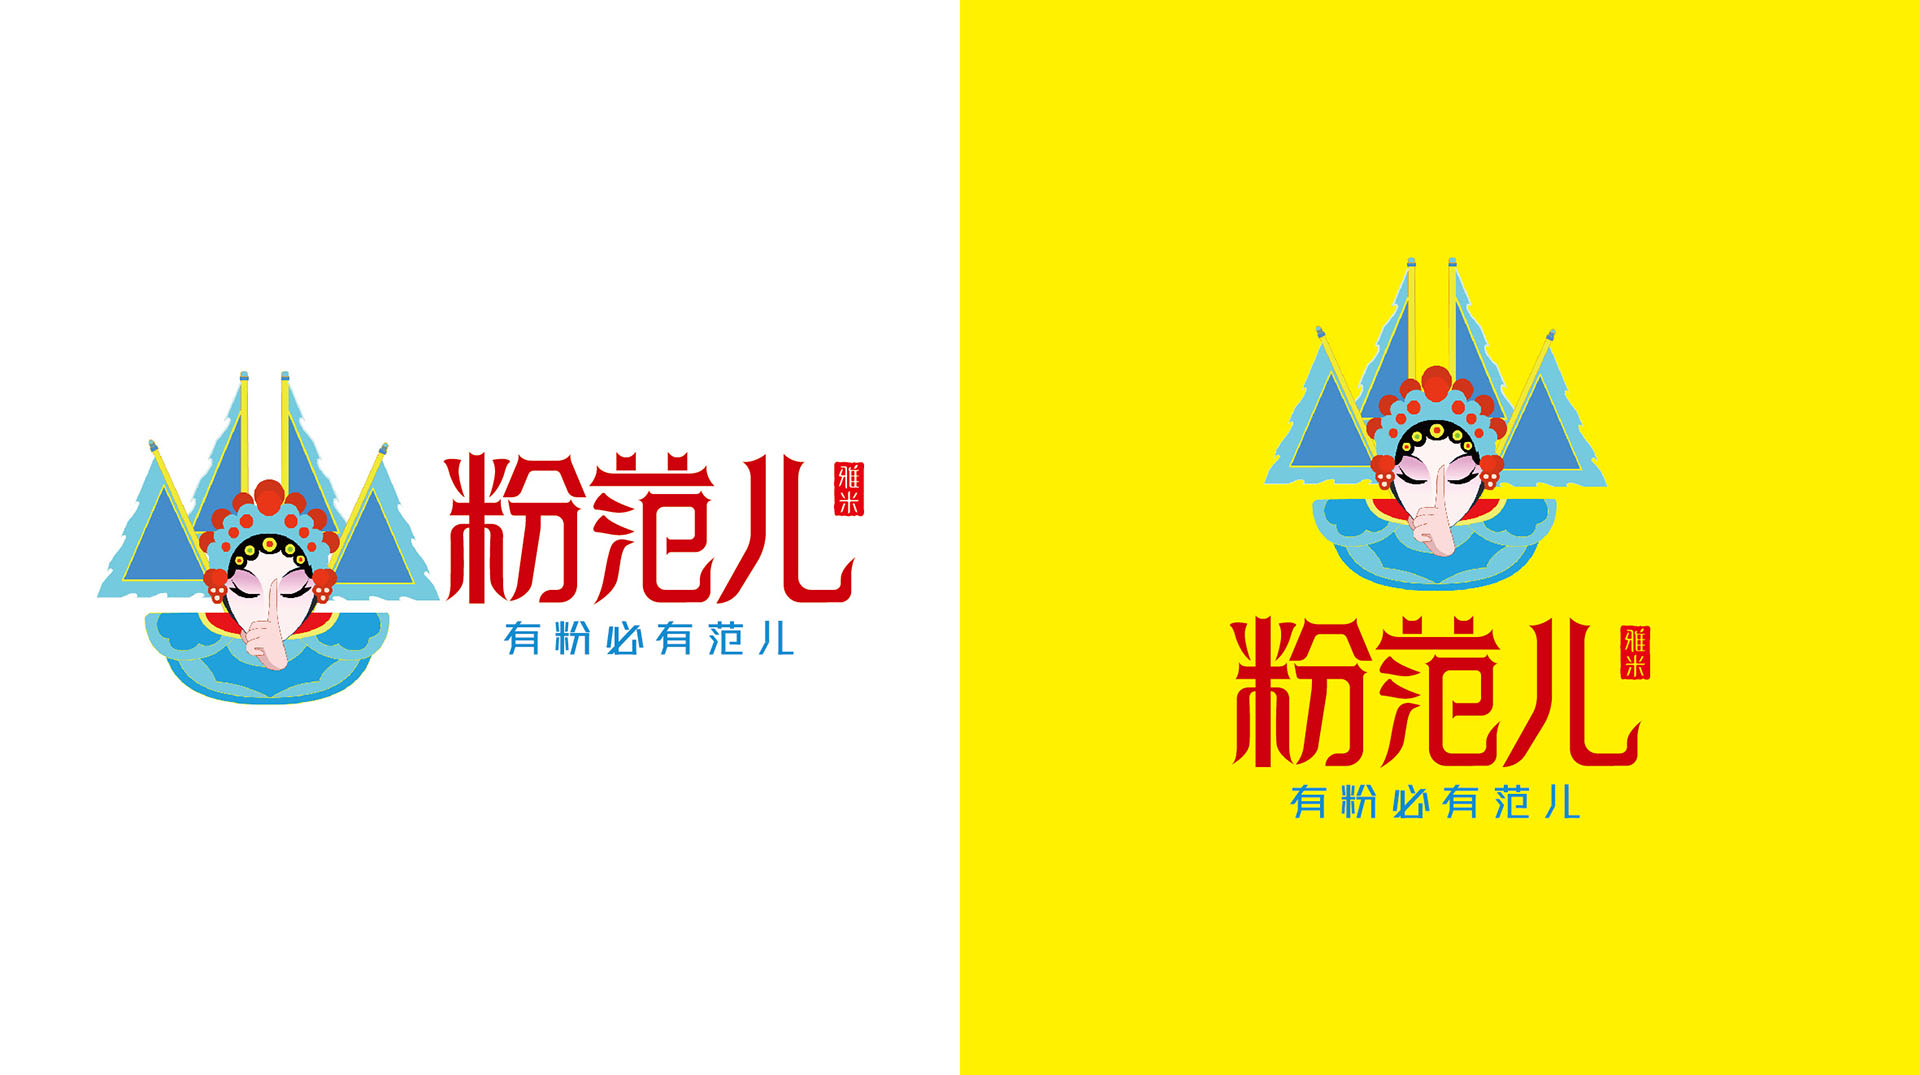 粉范儿雅米品牌logo提案_07